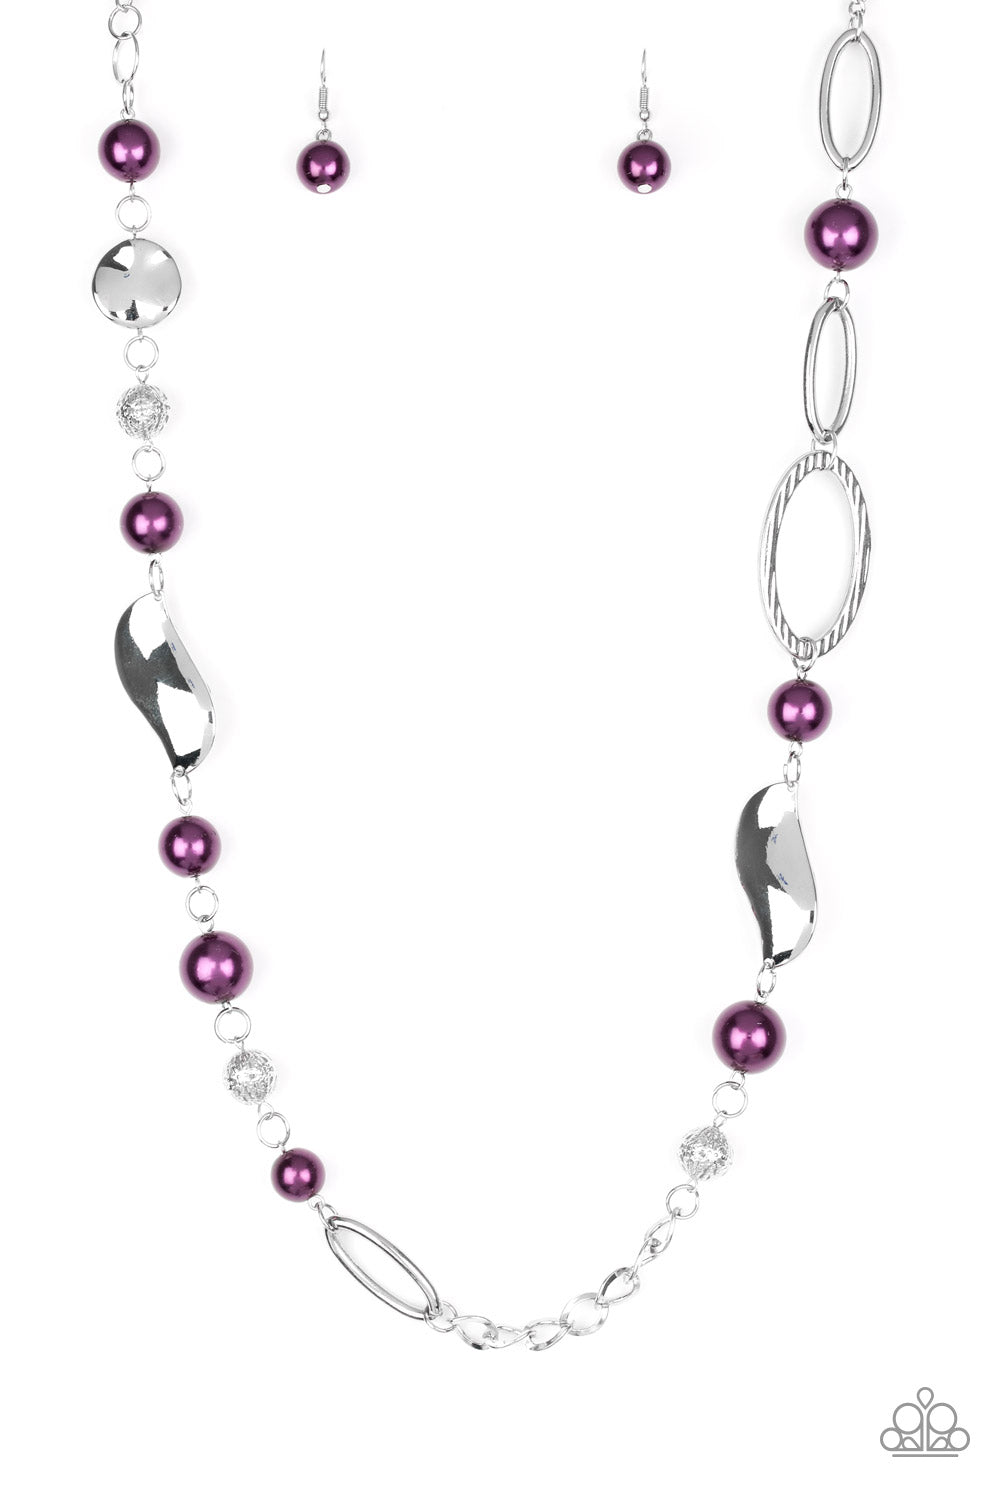 Flirtatiously Florida Purple Necklace Paparazzi New | eBay